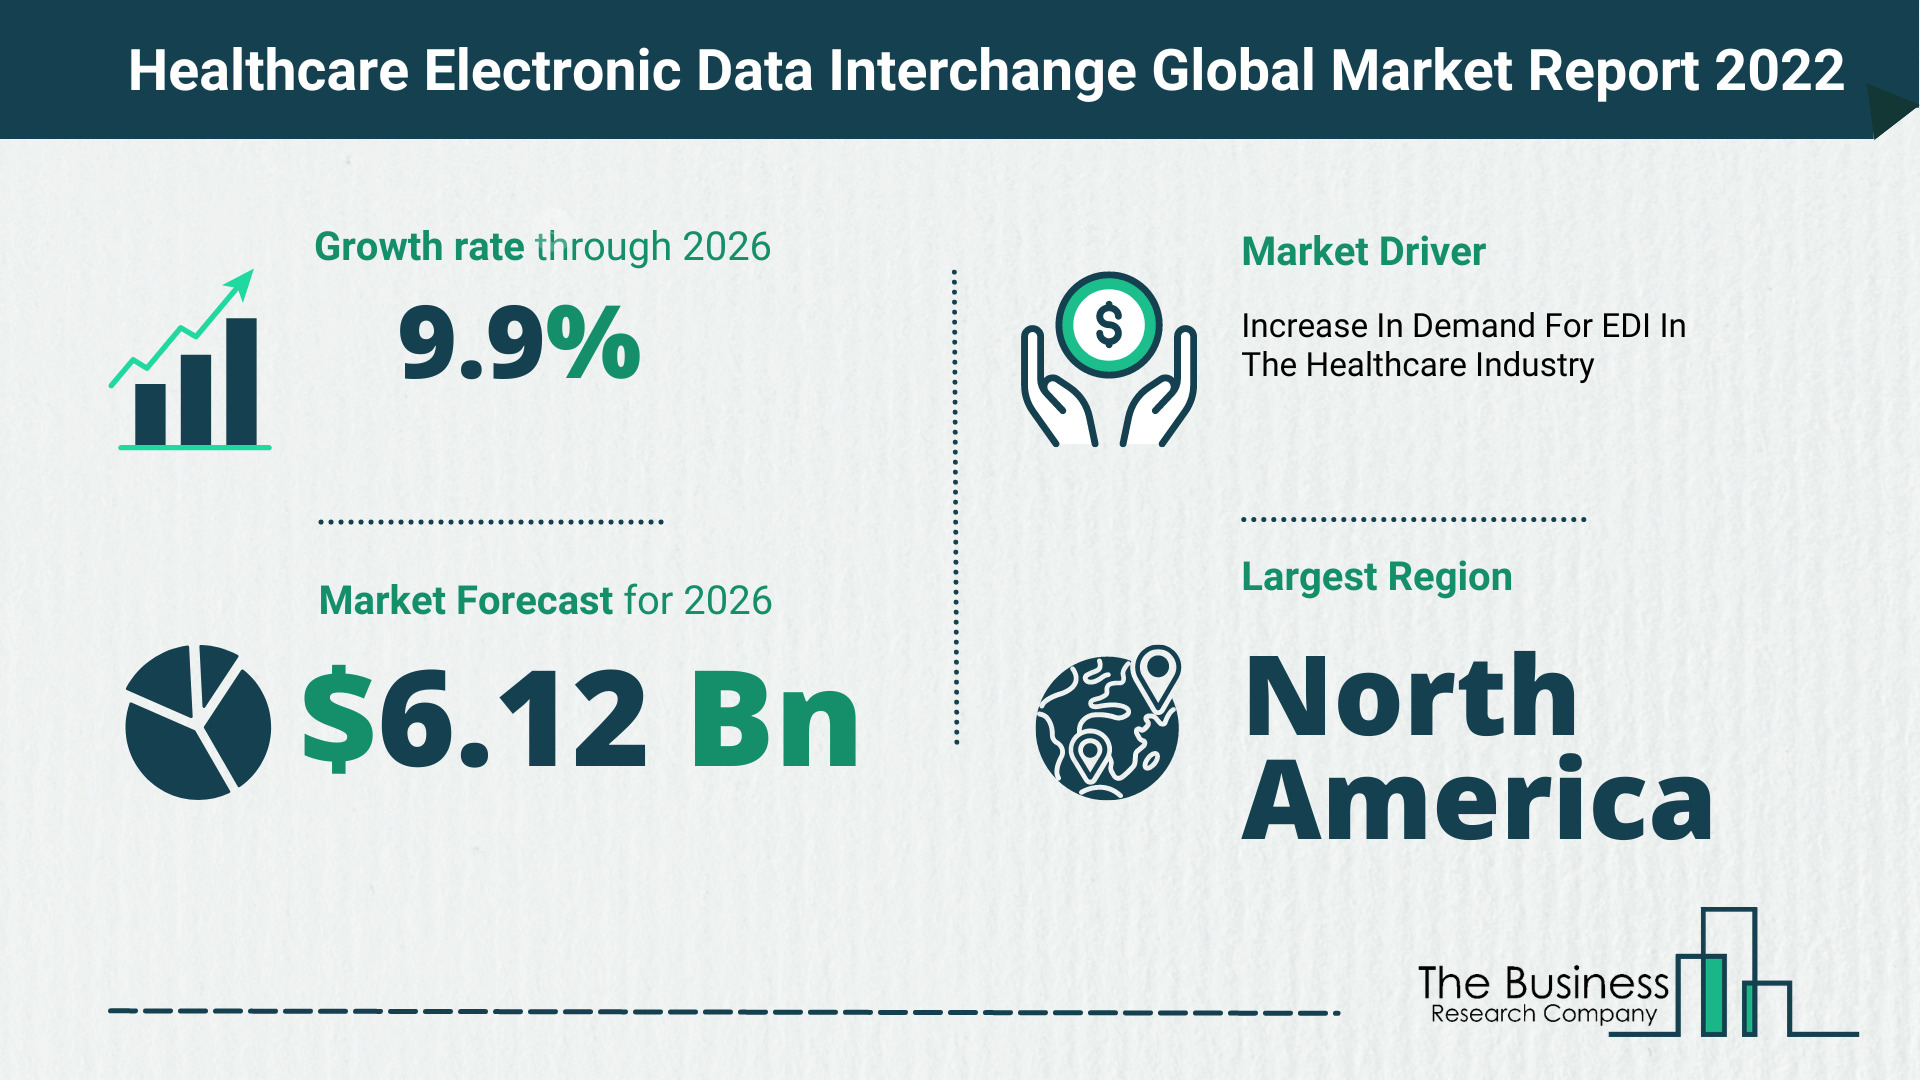 Global Healthcare Electronic Data Interchange Market